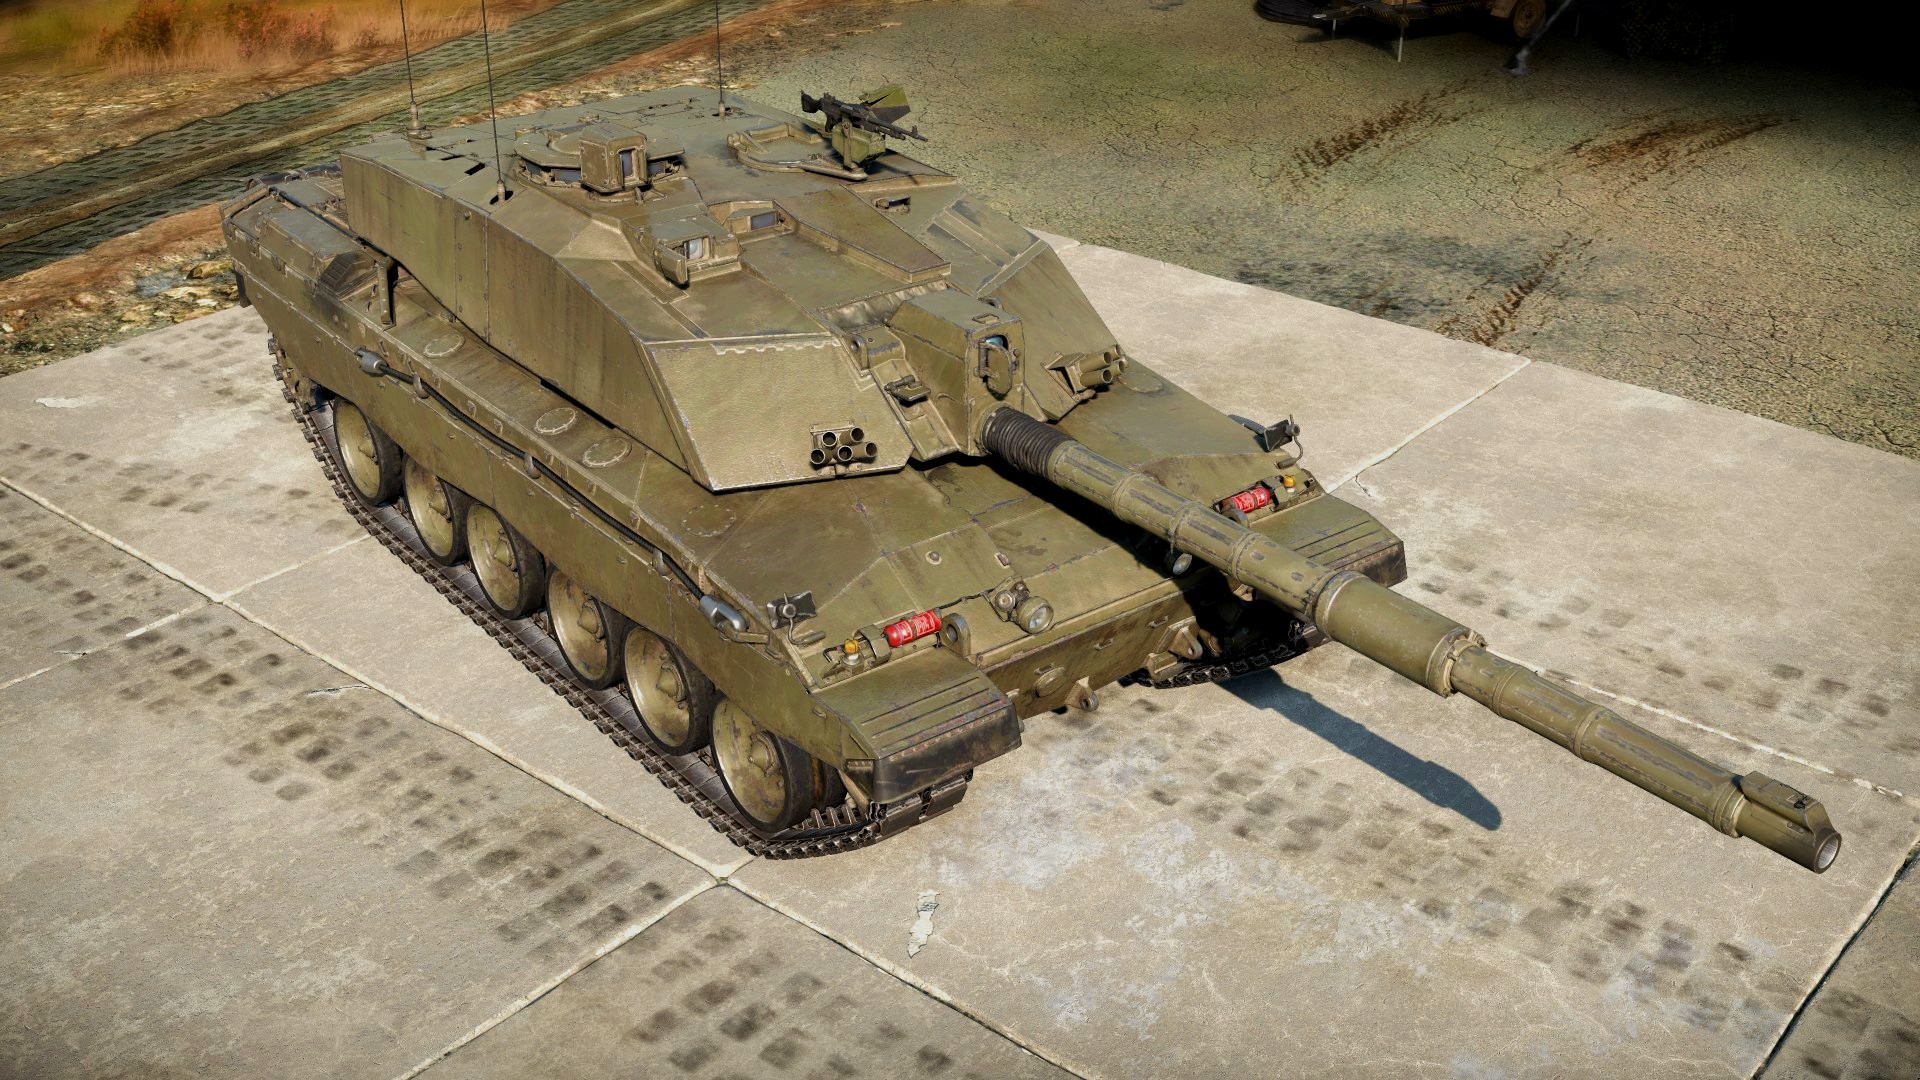 Pengembang War Thunder tidak akan menggunakan dokumen rahasia yang diposting di forum untuk mengubah tank